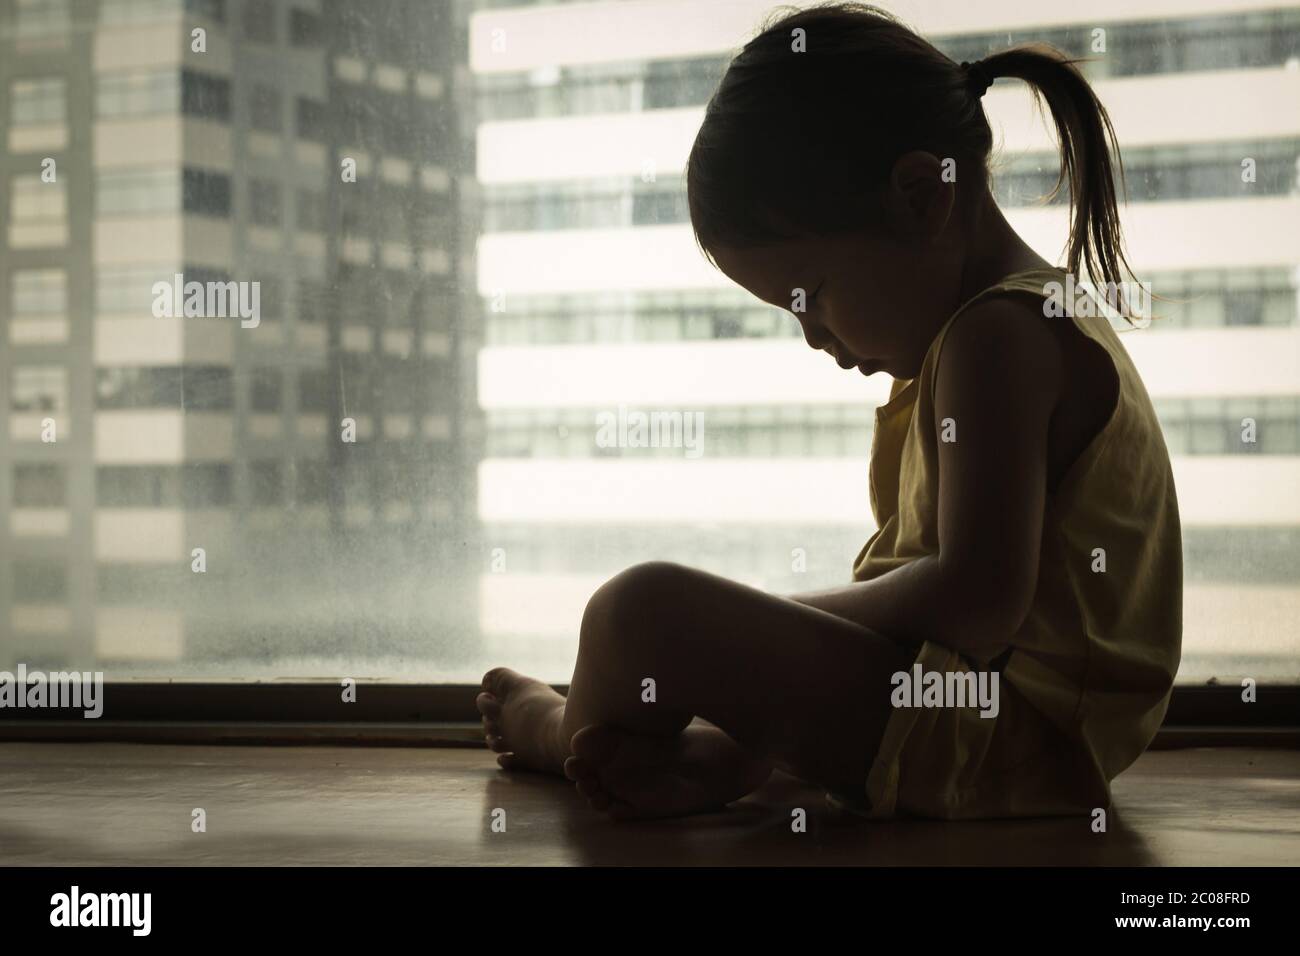 Ein kleines Mädchen, das neben einem Fenster sitzt und den Kopf in Traurigkeit nach unten drückt. Gefühl deprimiert und verletzt. Stockfoto